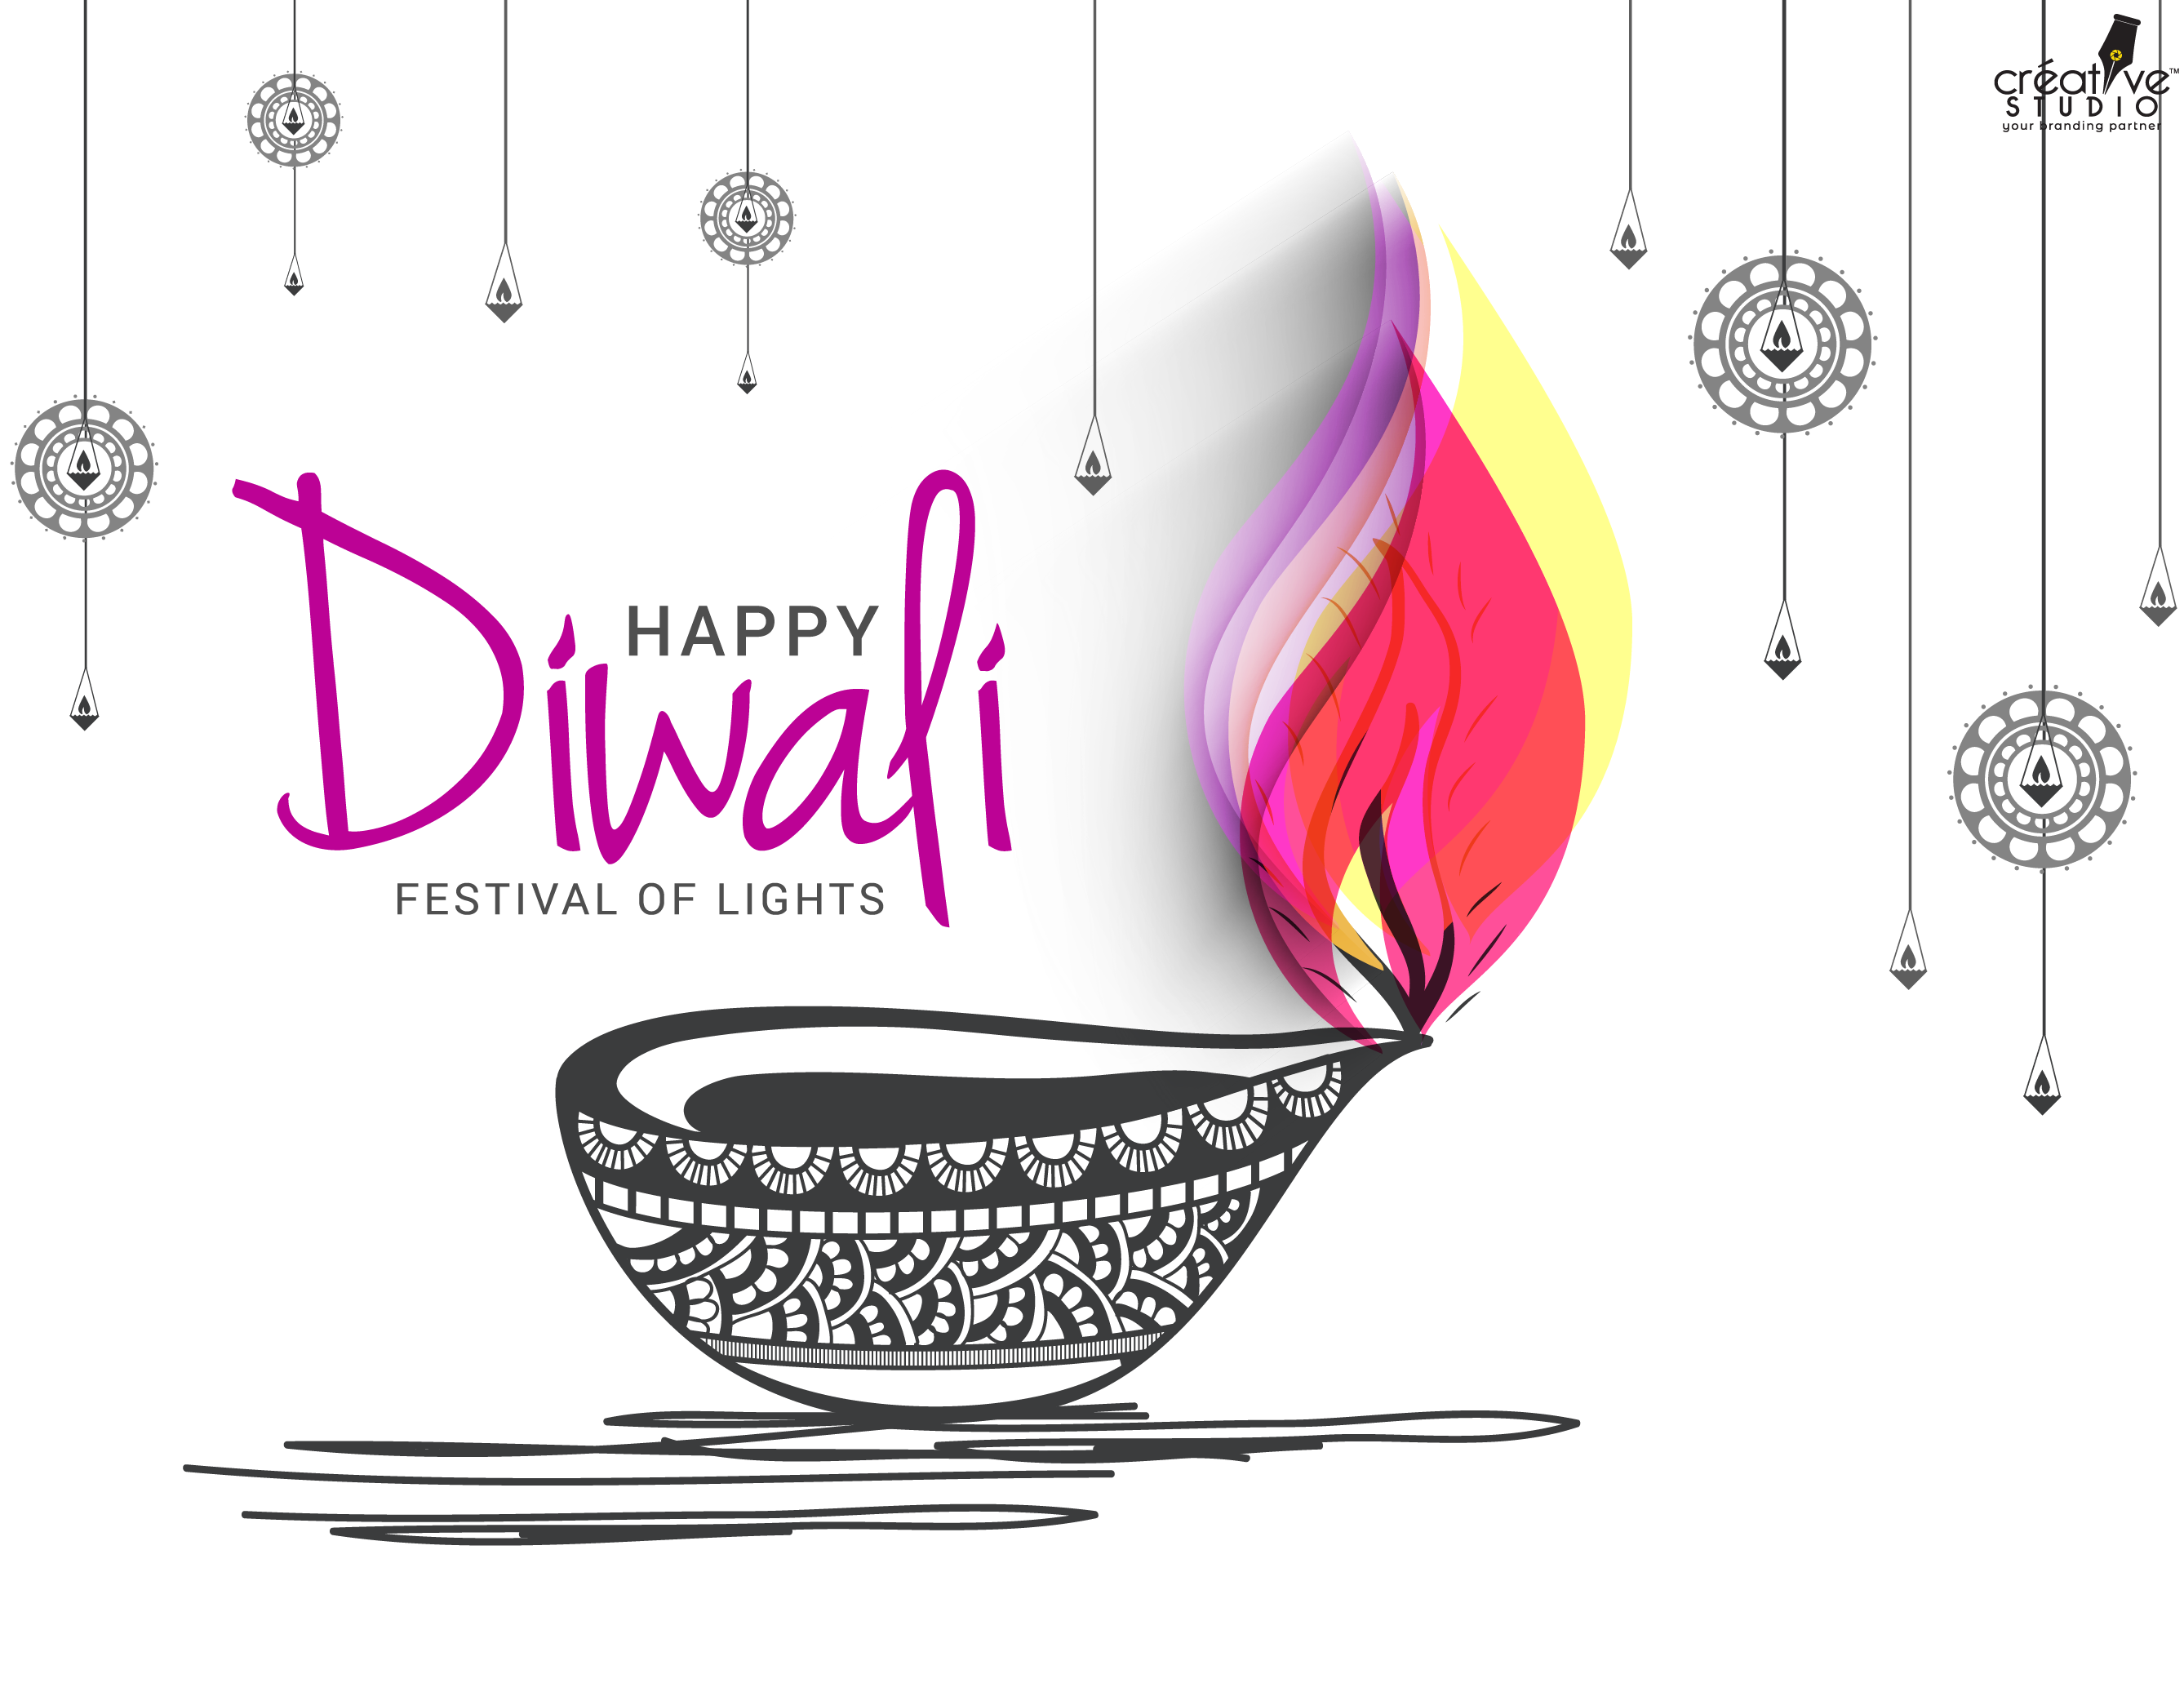 diwali 02 - Happy Diwali